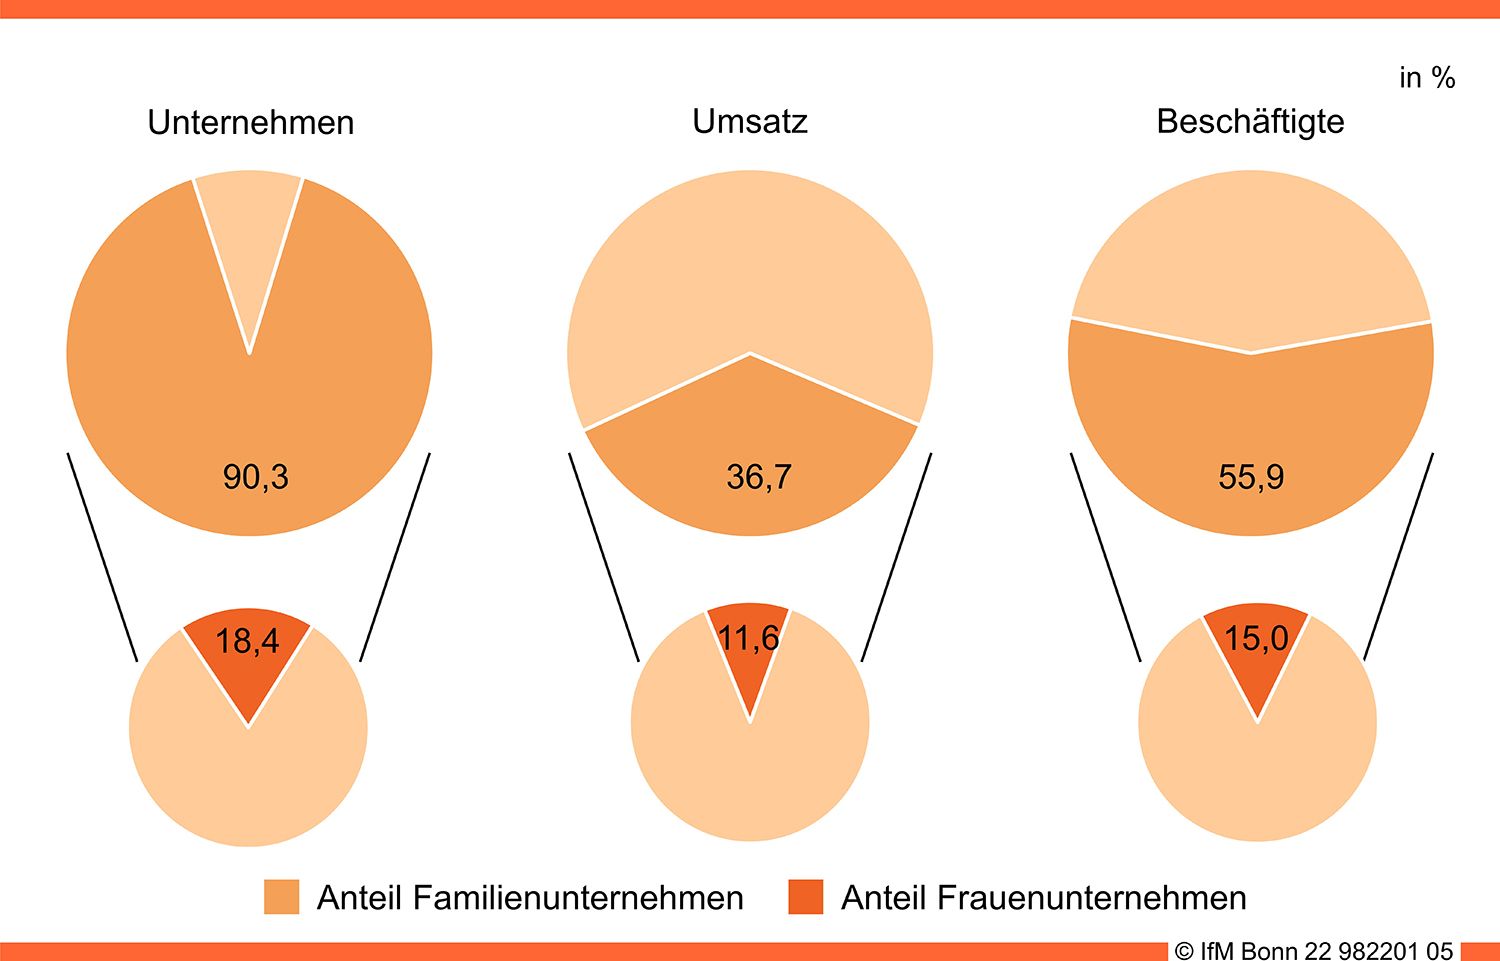 Anteile der Familien- und Frauenunternehmen in Deutschland (2019)